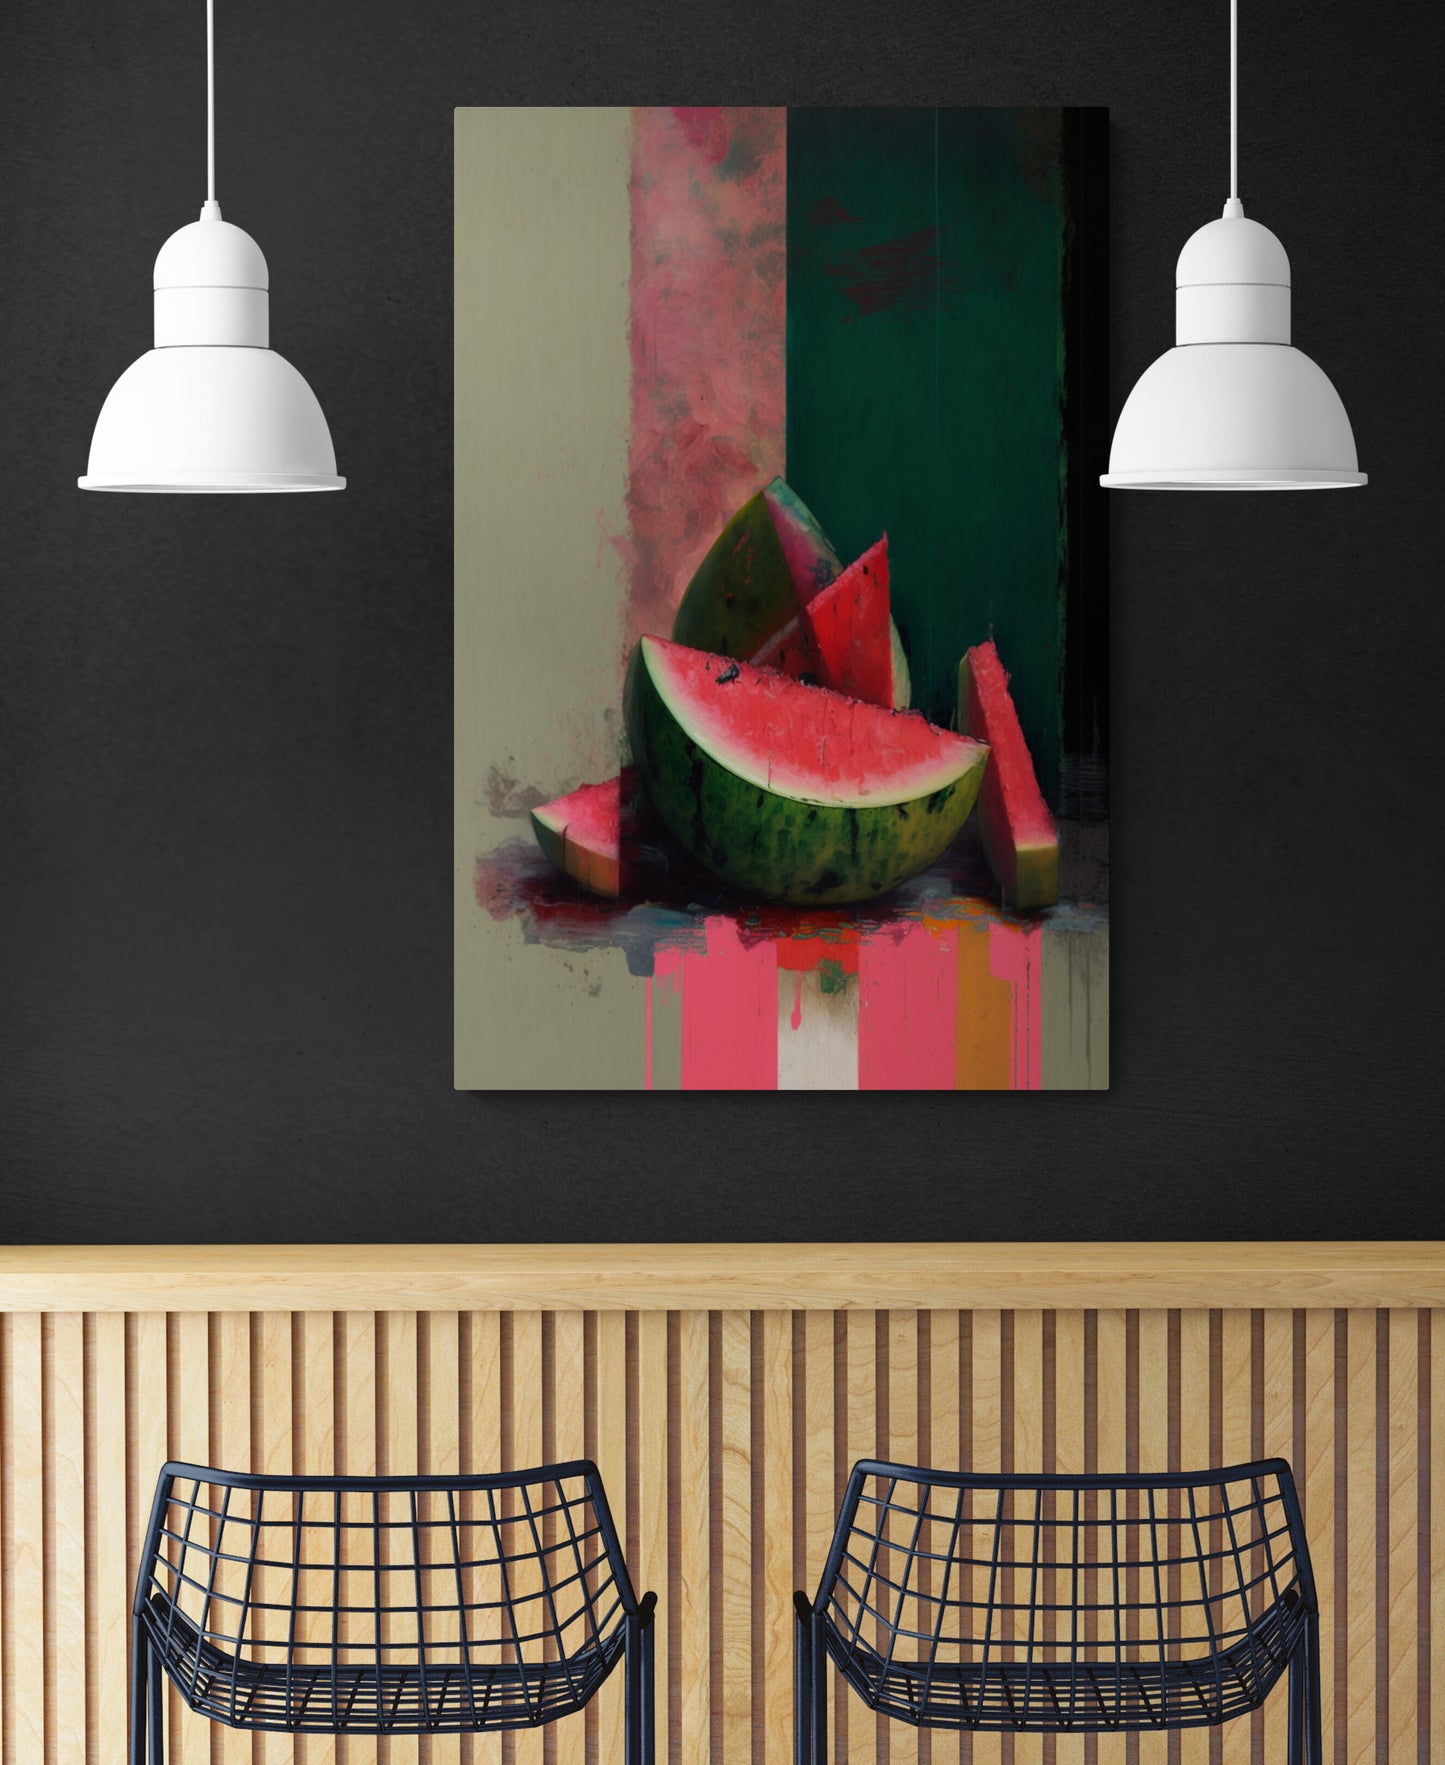 Tableau deco représentant des tranches de pastèque. Aux lignes courbes et couleurs évoquent la fraîcheur de ce fruit juteux dans noir